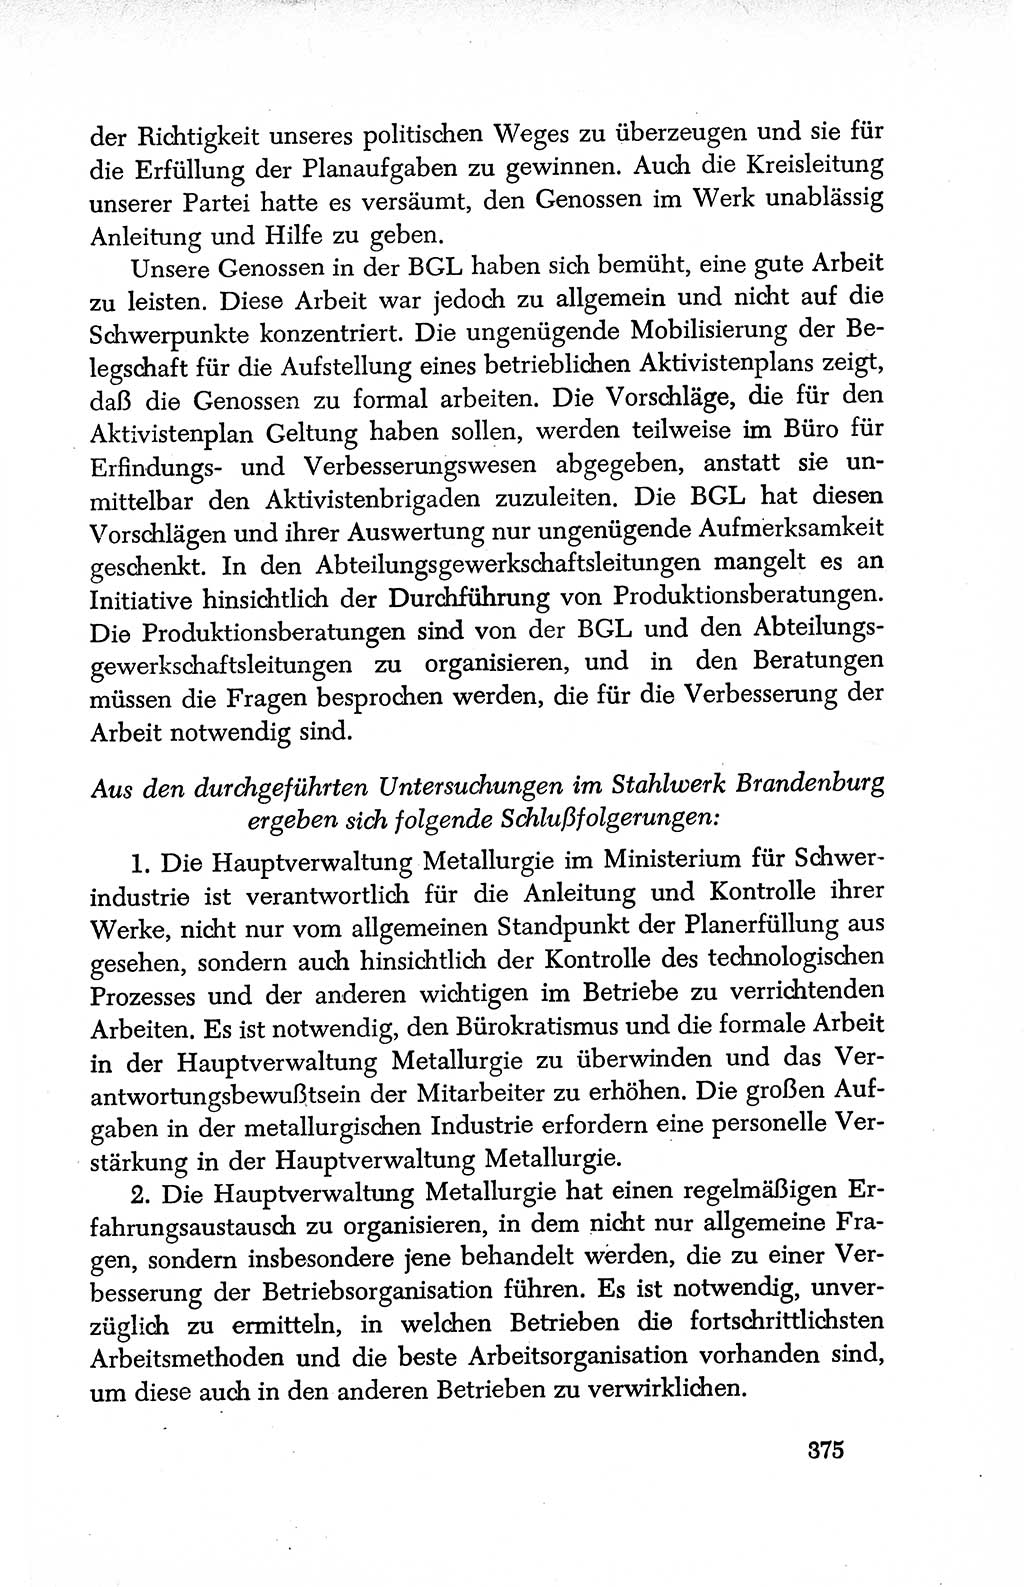 Dokumente der Sozialistischen Einheitspartei Deutschlands (SED) [Deutsche Demokratische Republik (DDR)] 1950-1952, Seite 375 (Dok. SED DDR 1950-1952, S. 375)